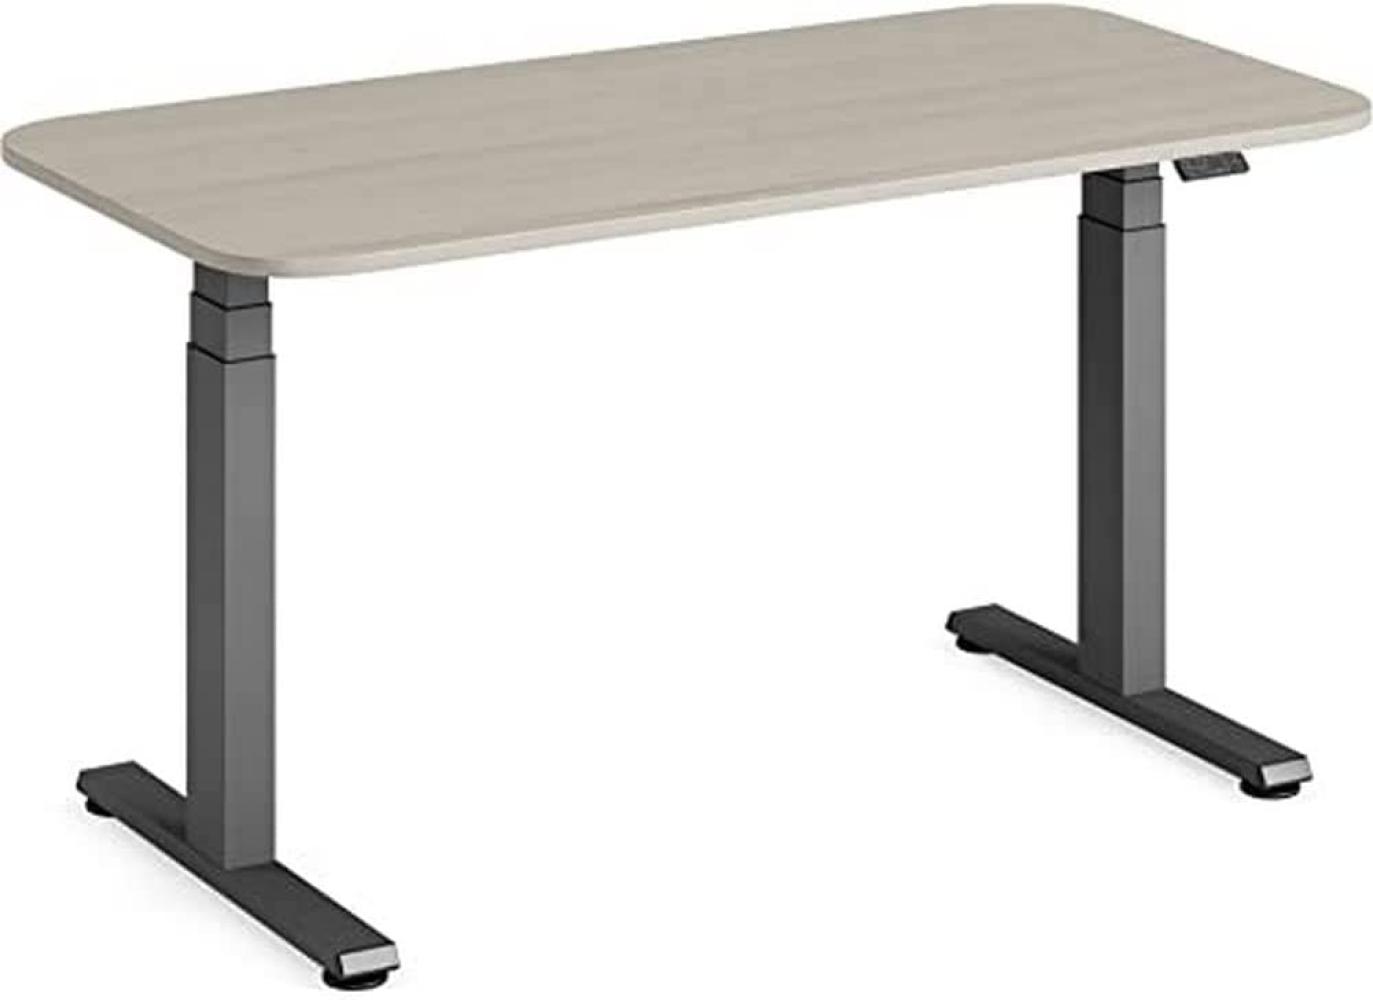 Steelcase Solo höhenverstellbarer Sitz-Steh-Schreibtisch mit Tischplatte in Akazie und Gestell in Amsel (140 x 70 cm) Bild 1